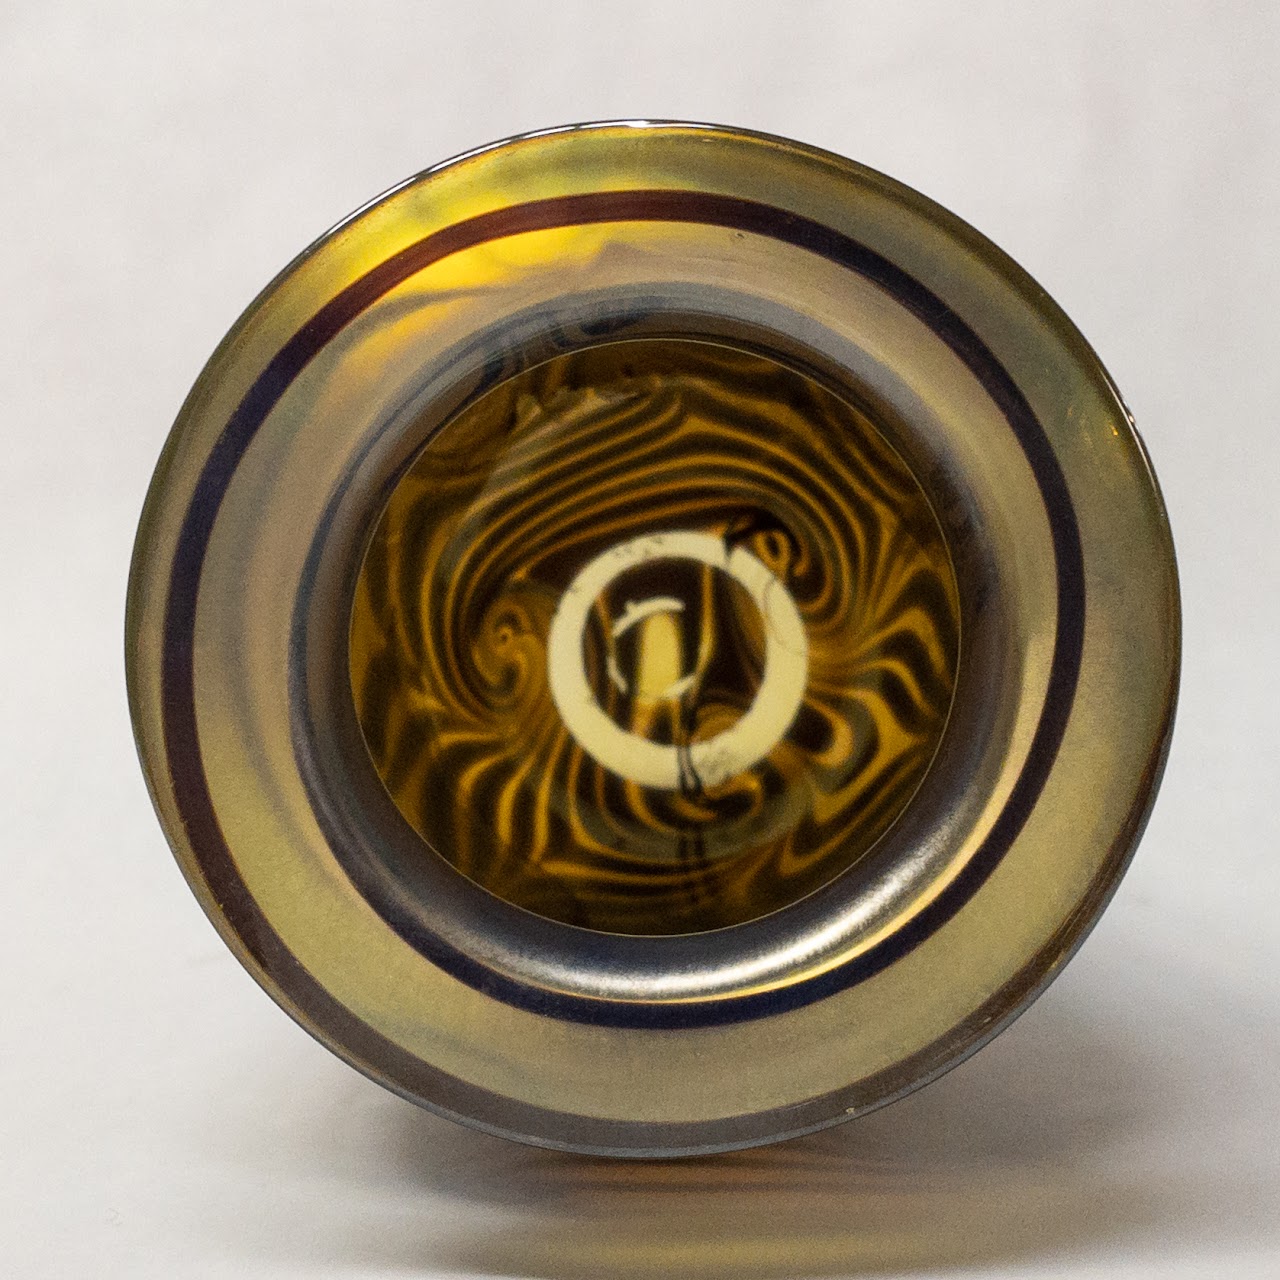 Eickholt Art Glass Vase